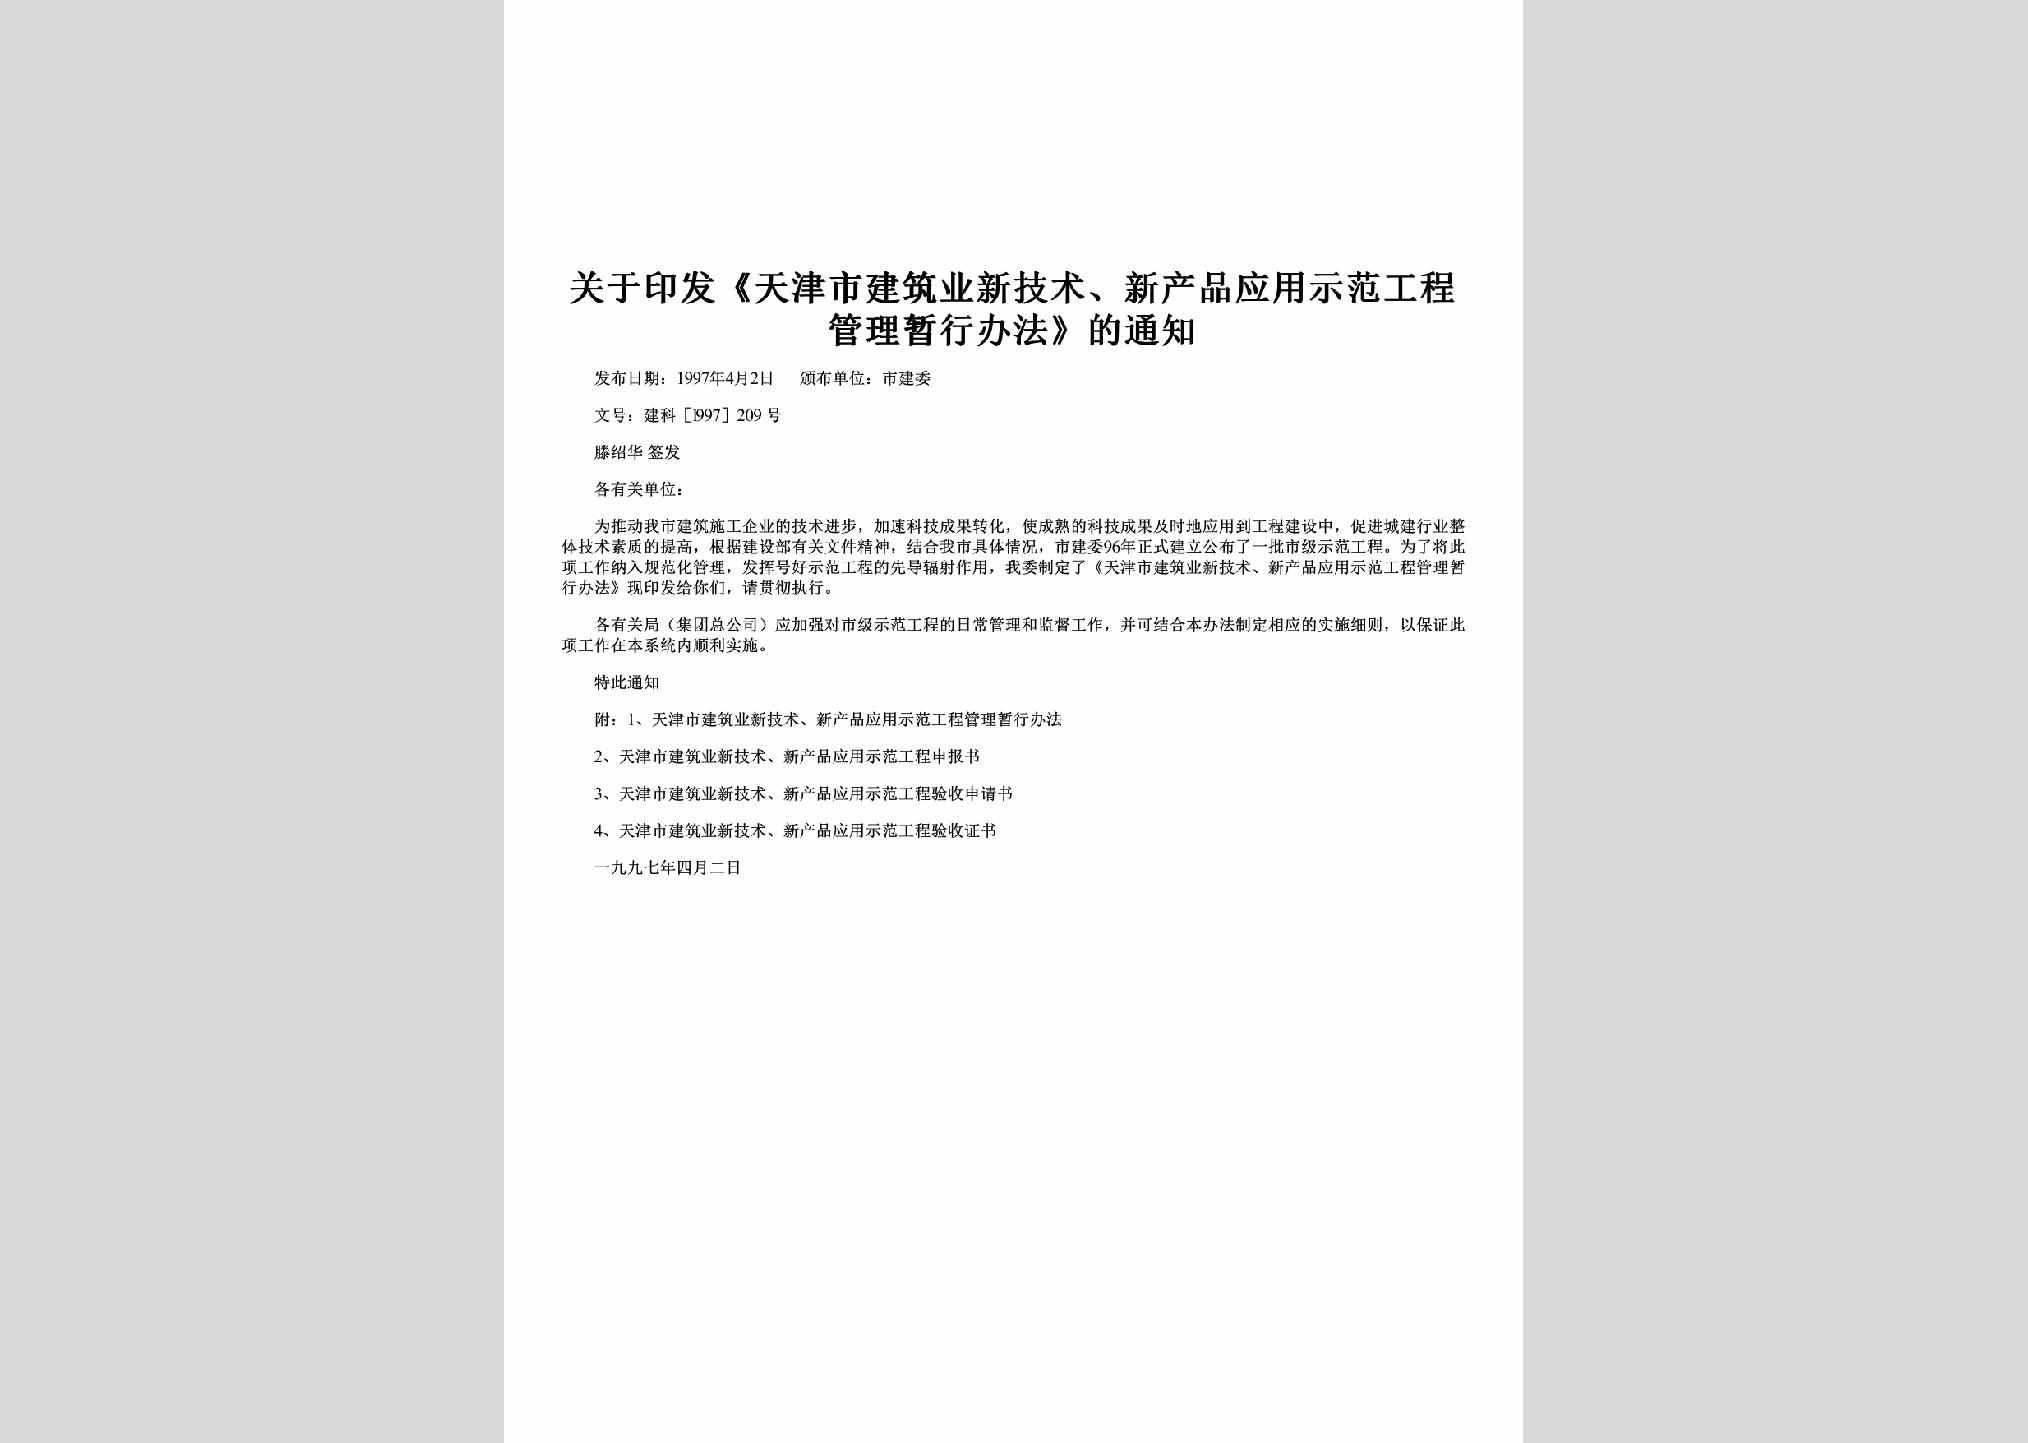 建科[l997]209号：关于印发《天津市建筑业新技术、新产品应用示范工程管理暂行办法》的通知